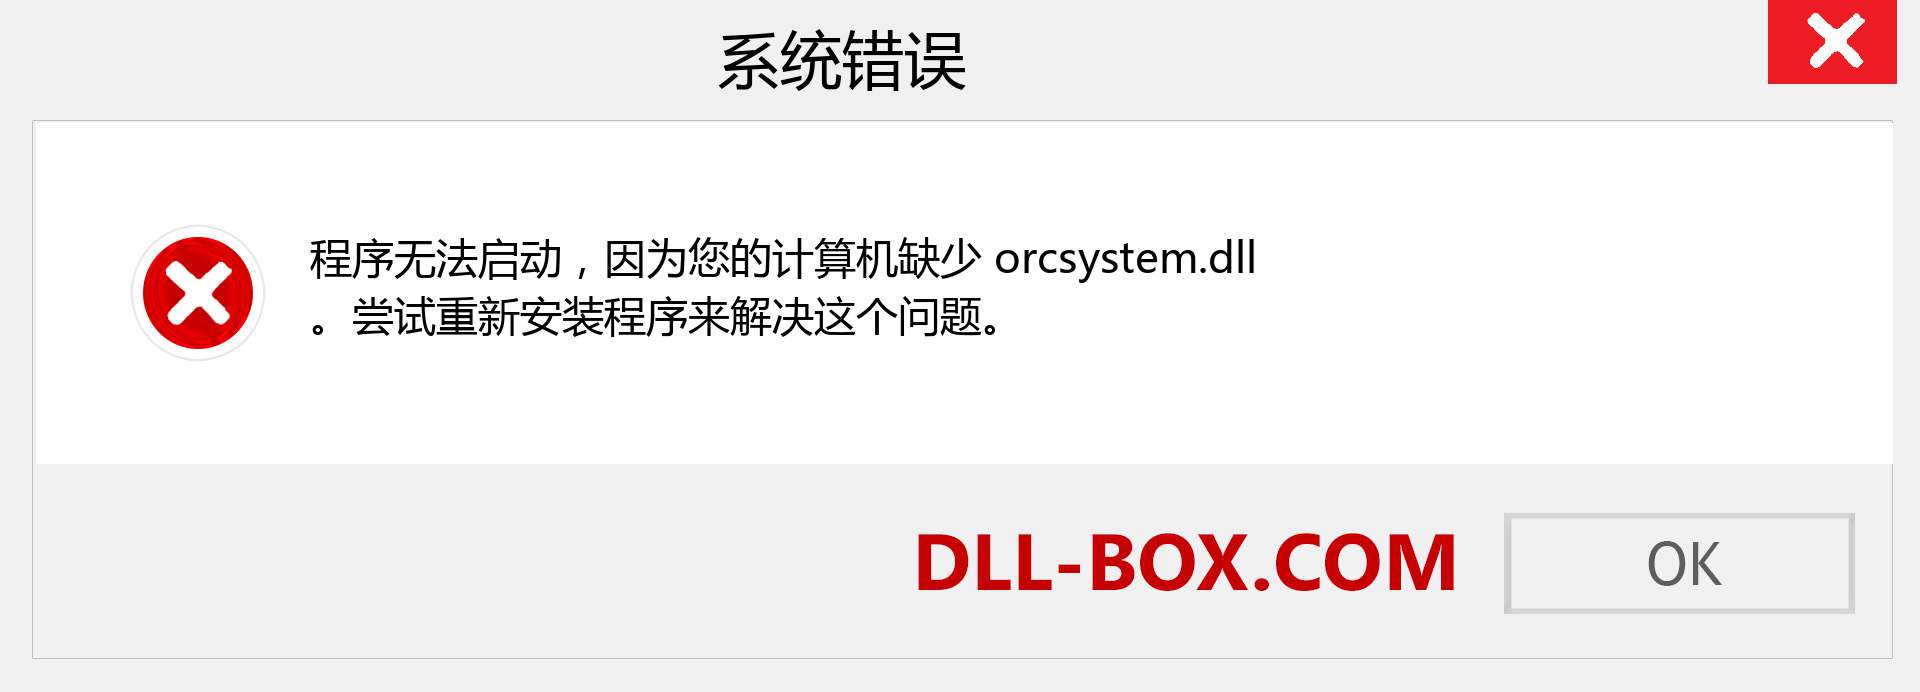 orcsystem.dll 文件丢失？。 适用于 Windows 7、8、10 的下载 - 修复 Windows、照片、图像上的 orcsystem dll 丢失错误